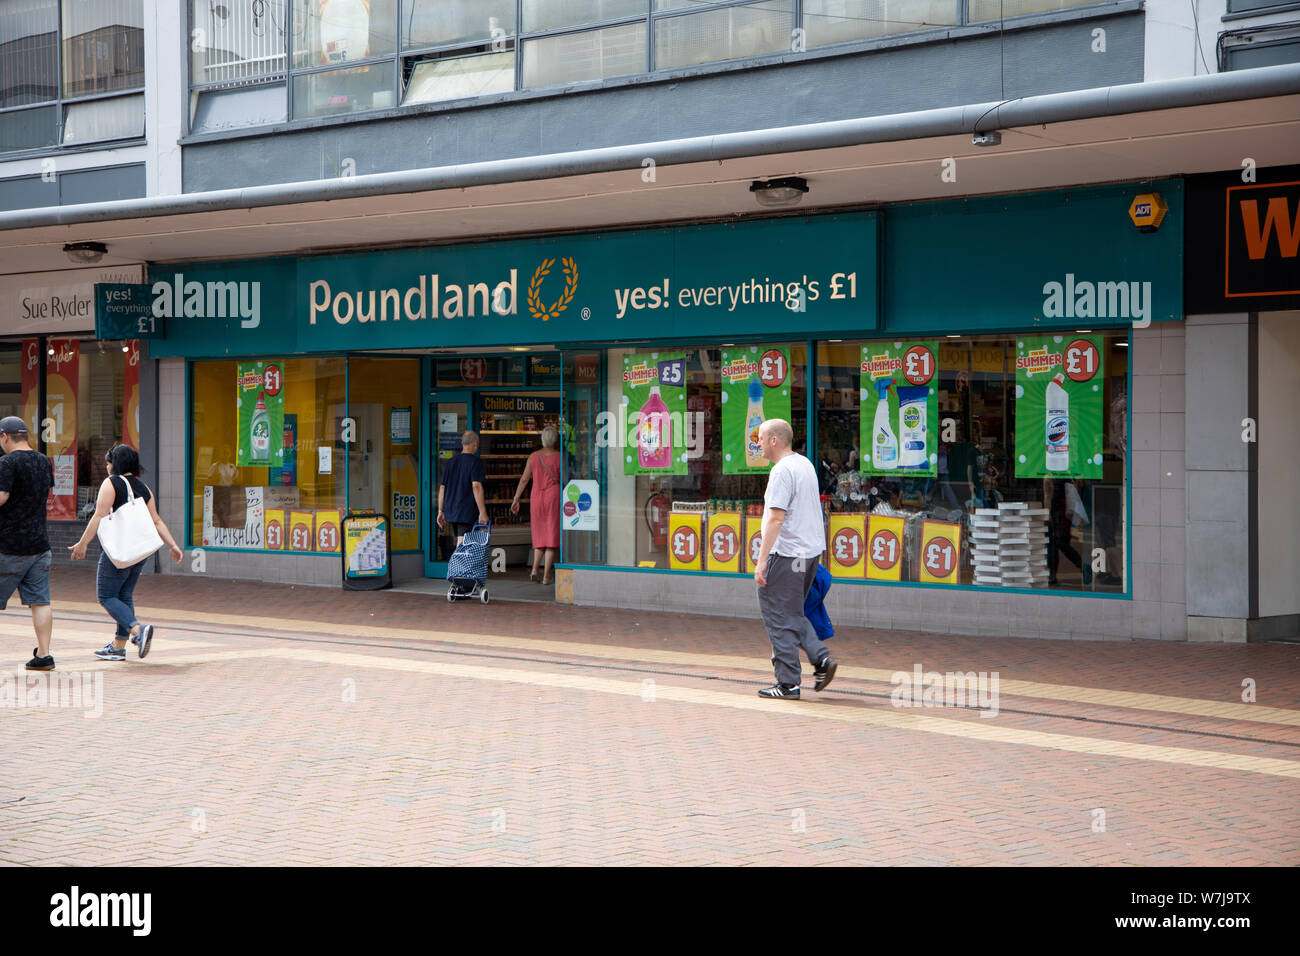 Poundland shopfront, Wythenshawe market, Manchester Stock Photo